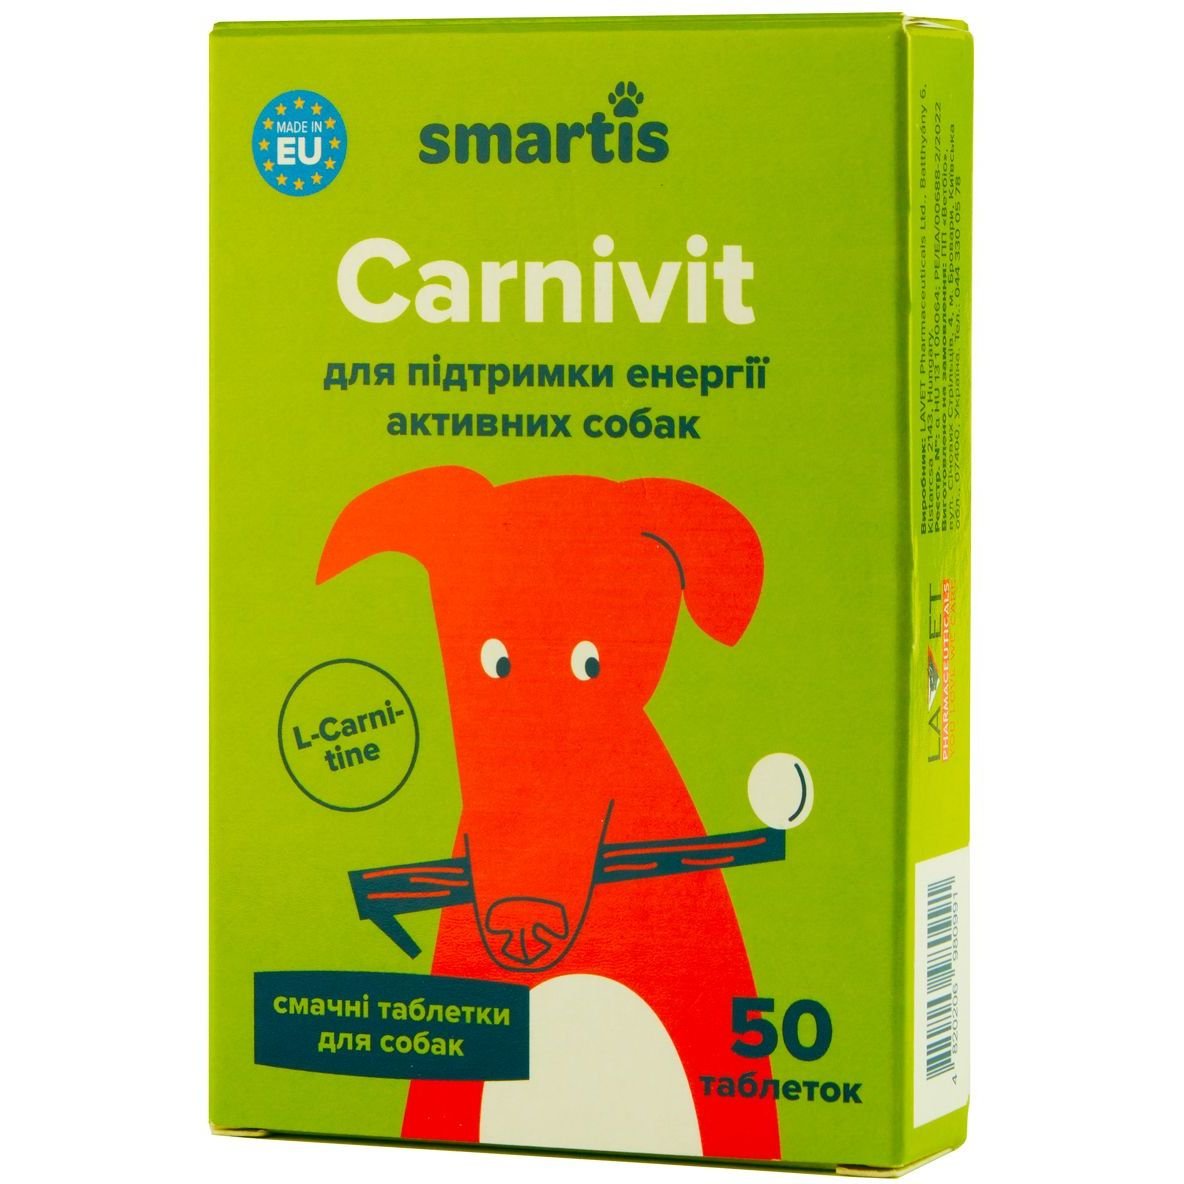 Додатковий корм для собак Smartis Optimum із залізом, 50 таблеток - фото 1